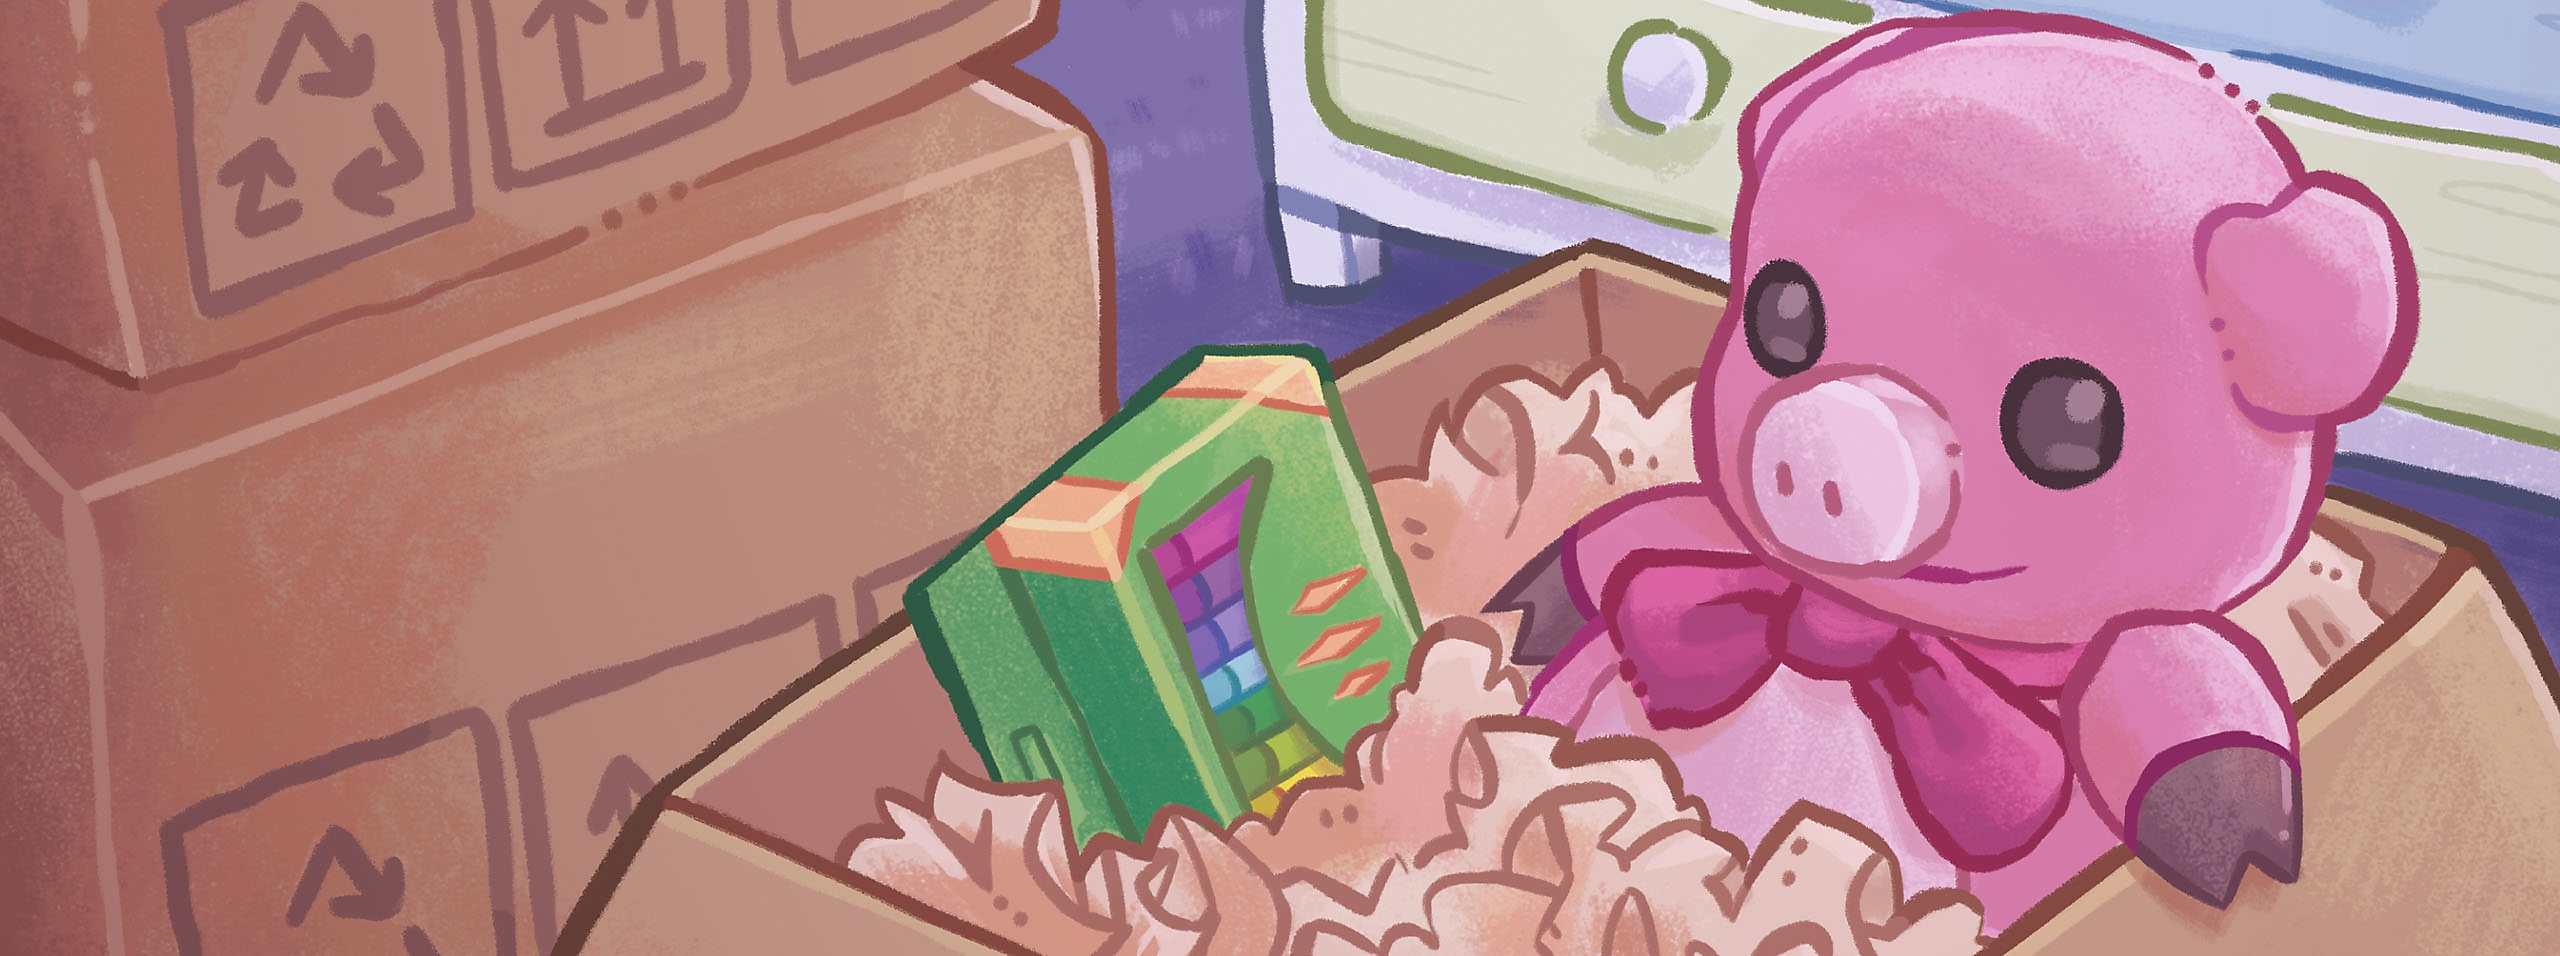 Illustration de héros d'Unpacking - un carton avec un cochon en peluche rose